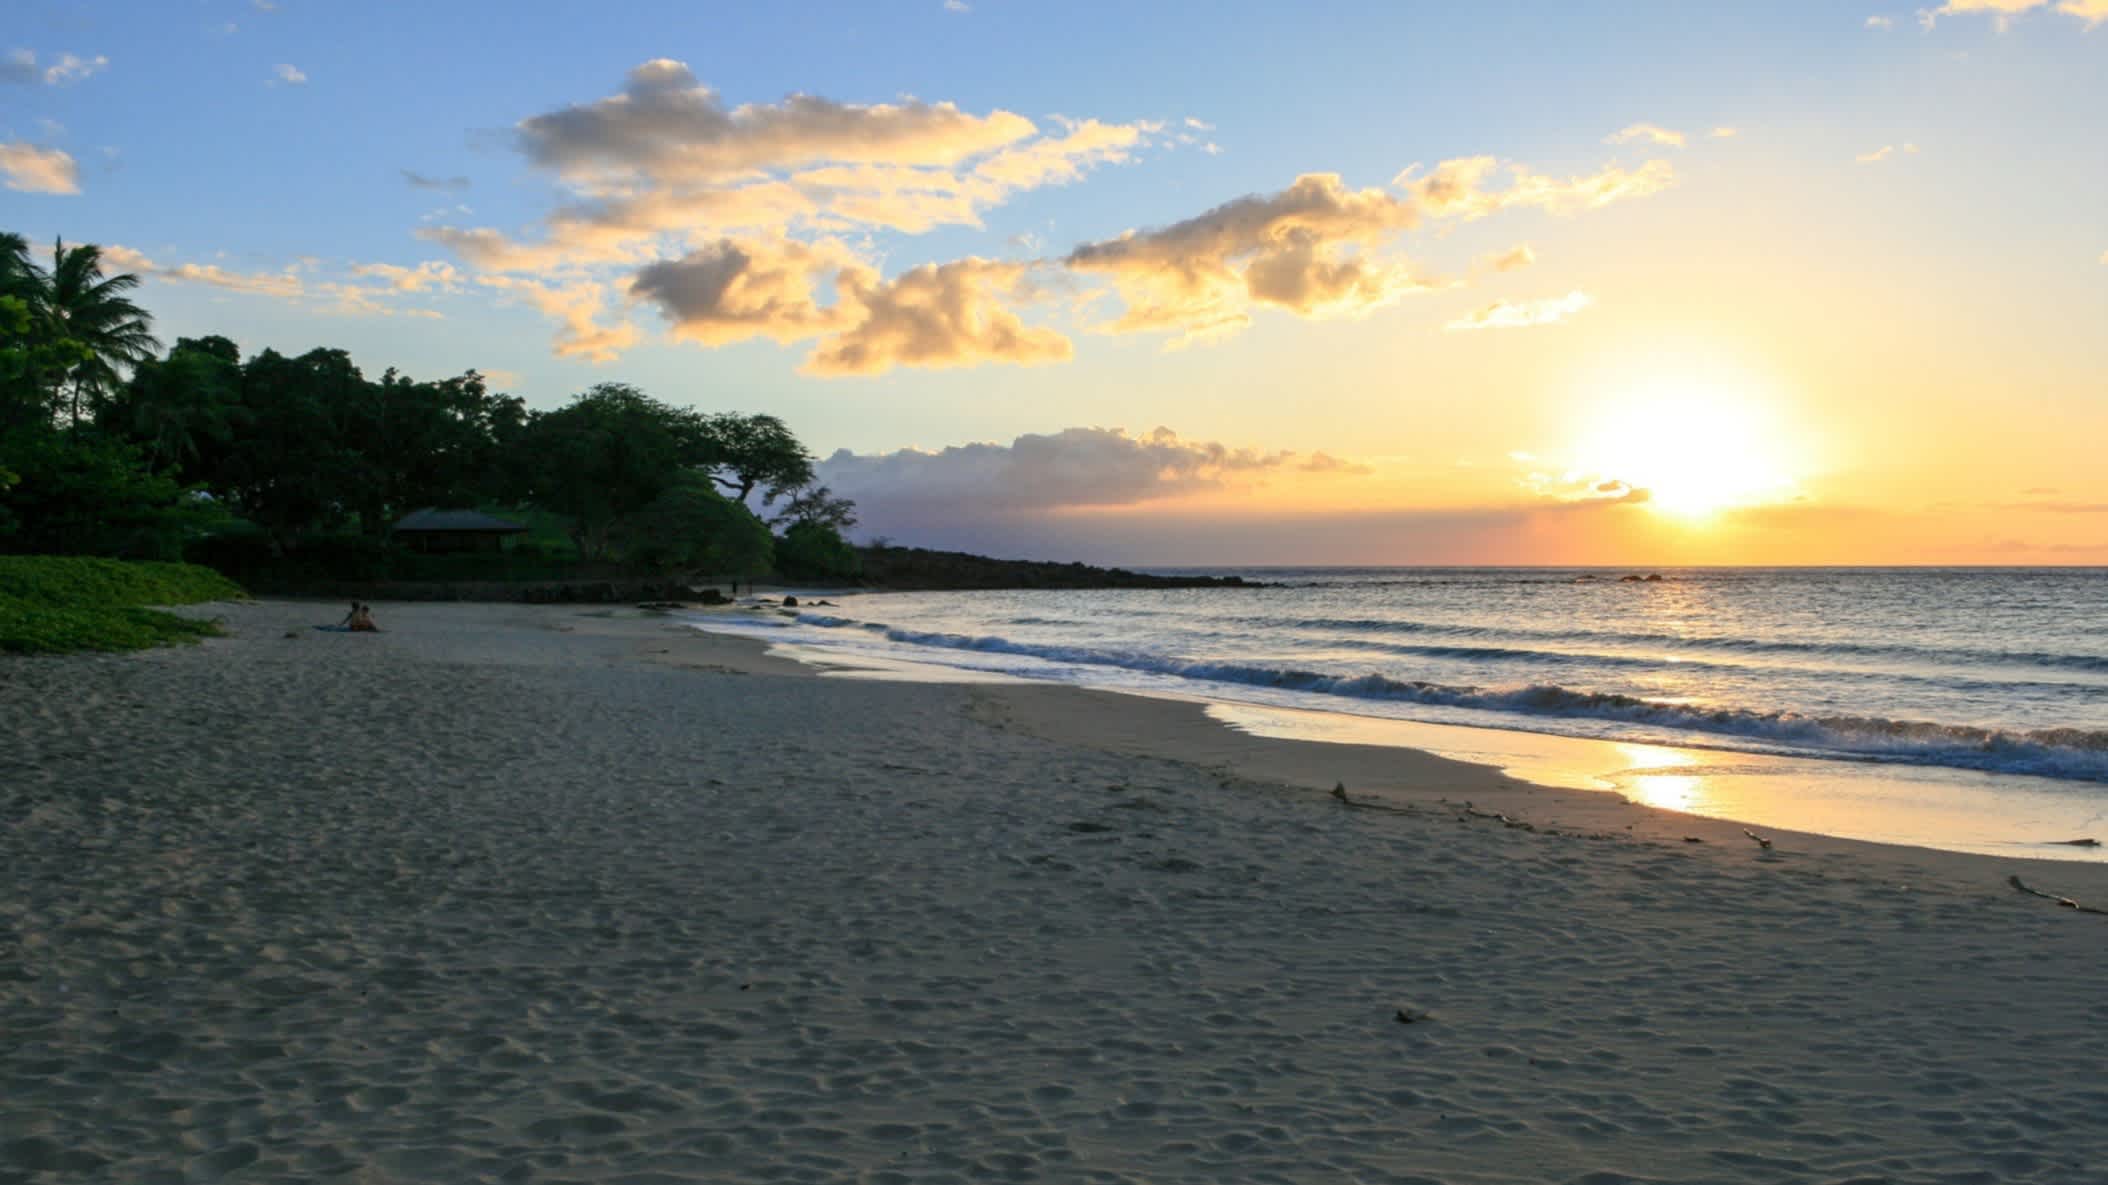 Der Strand Mauna Kea Beach, Big Island, Hawaii, USA bei Sonnendämmerung und mit Blick auf das Meer.